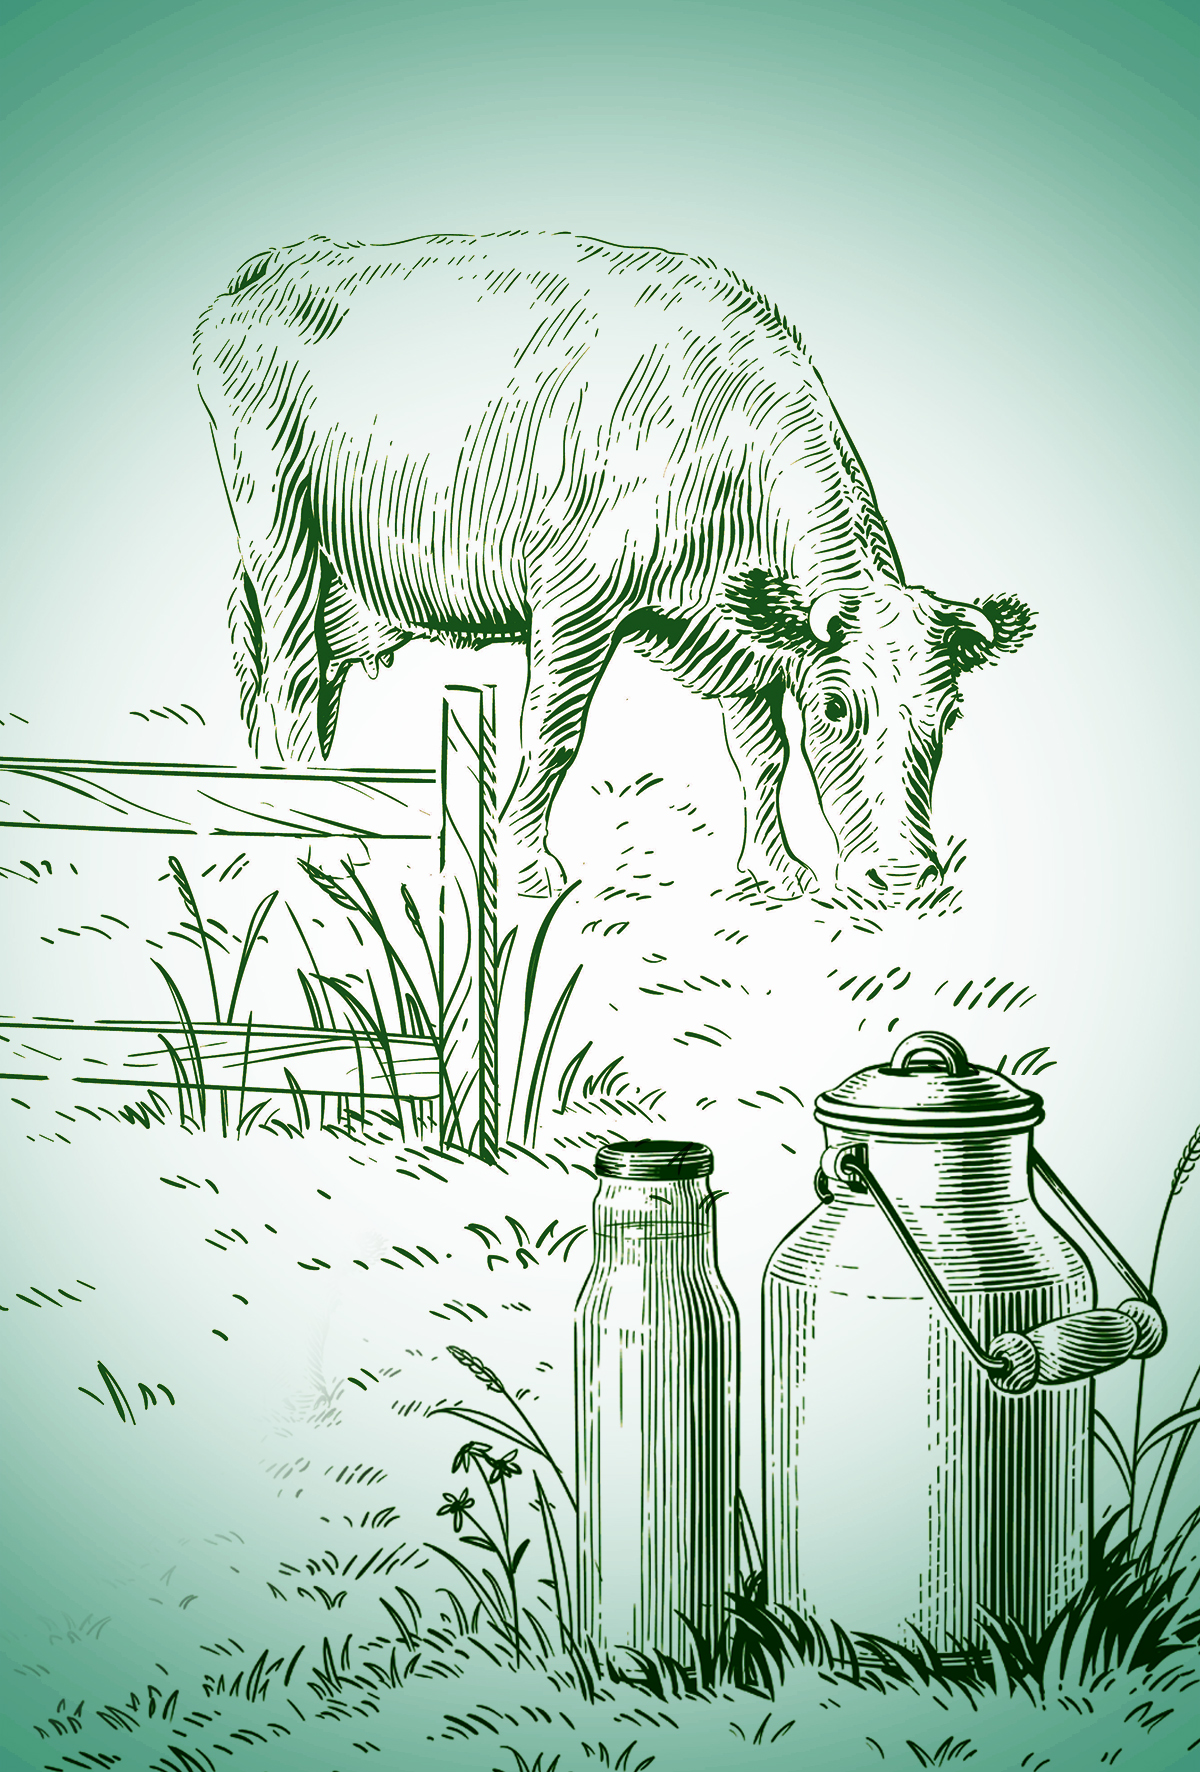 Sağım sırası, süt ineklerinin yem tüketimini etkiler mi?